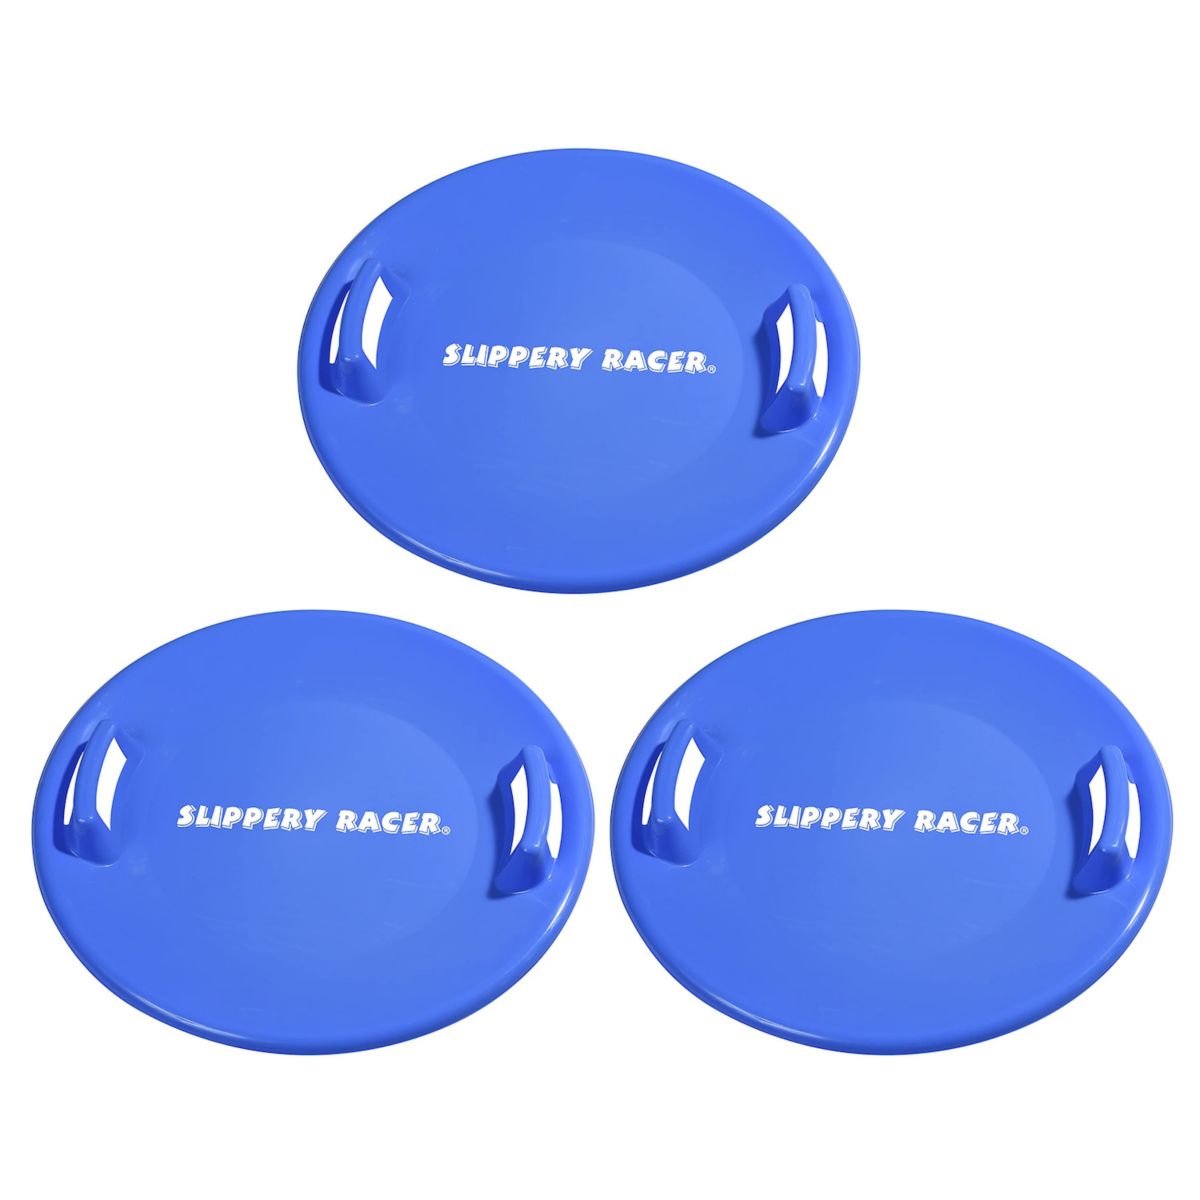 Дисковые санки Slippery Racer Downhill Pro для взрослых и детей, синие (3 шт. в упаковке) Slippery Racer